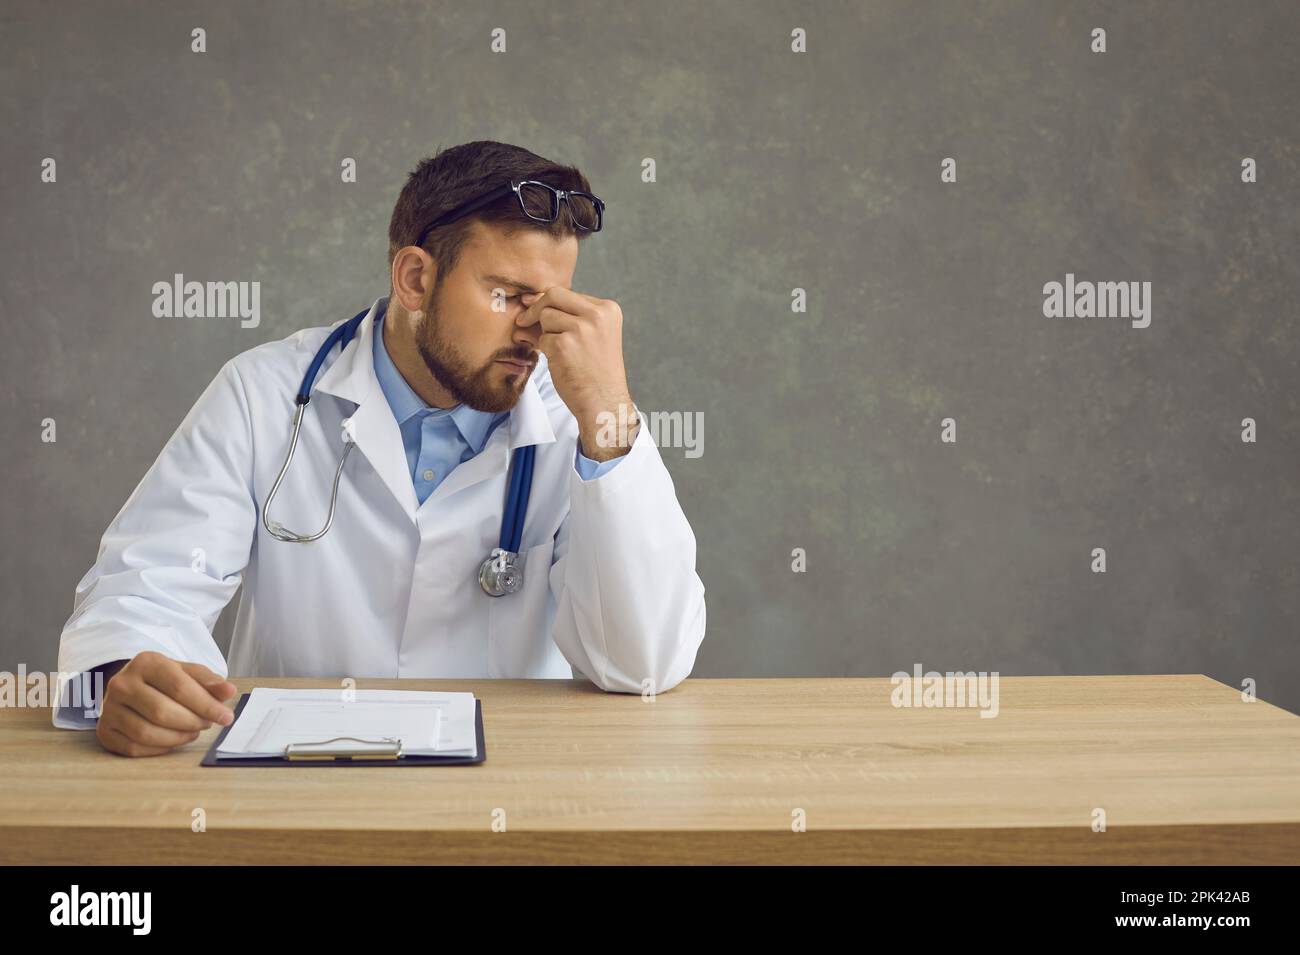 Müde, erschöpfter männlicher Arzt, der nach einem harten Arbeitstag am Tisch sitzt. Medizinischer Alltag. Stockfoto